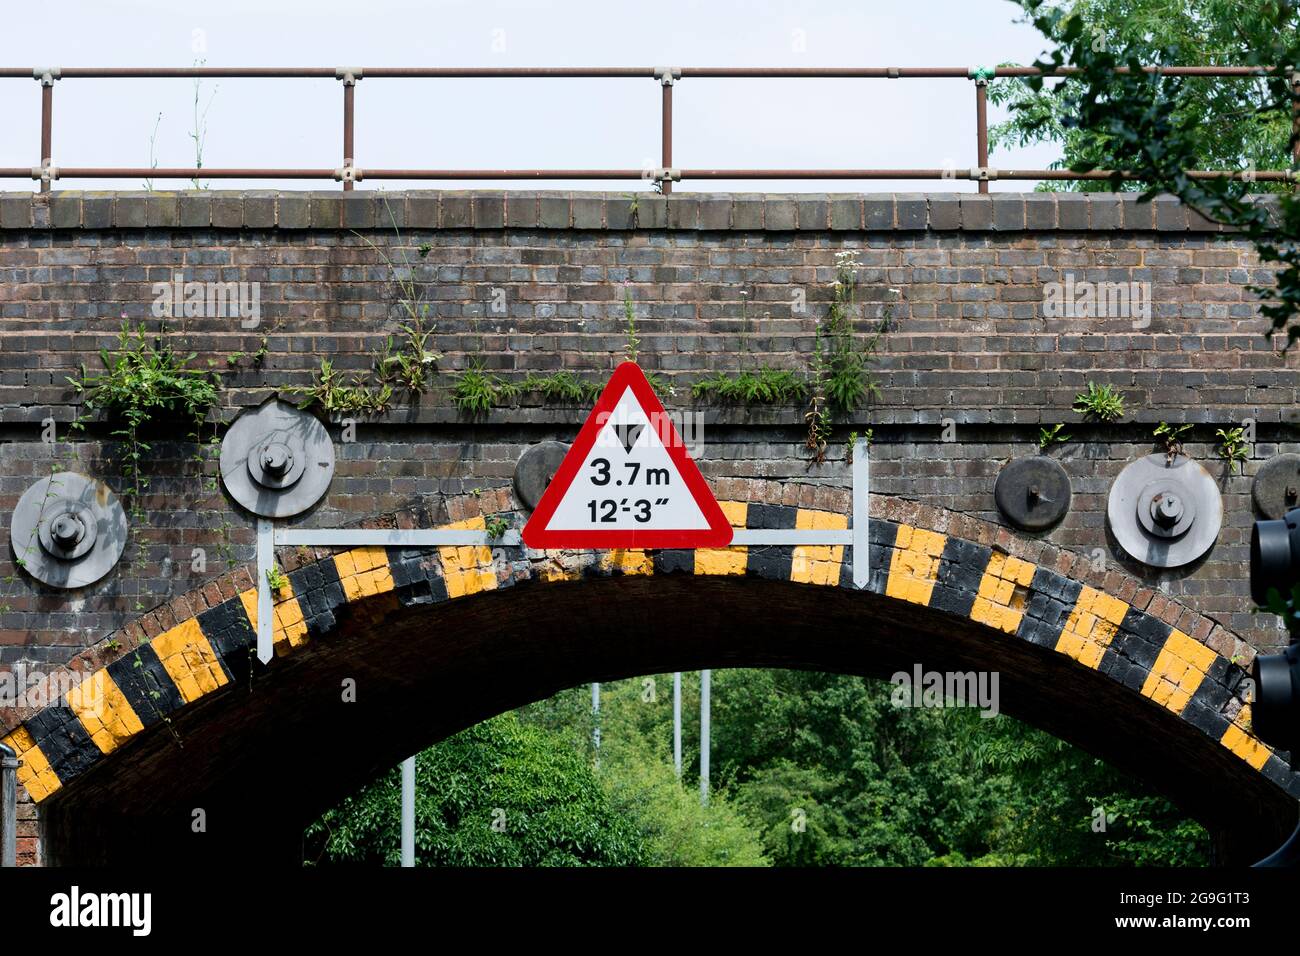 Señal de restricción de altura en un puente ferroviario, Warwick, Reino Unido Foto de stock